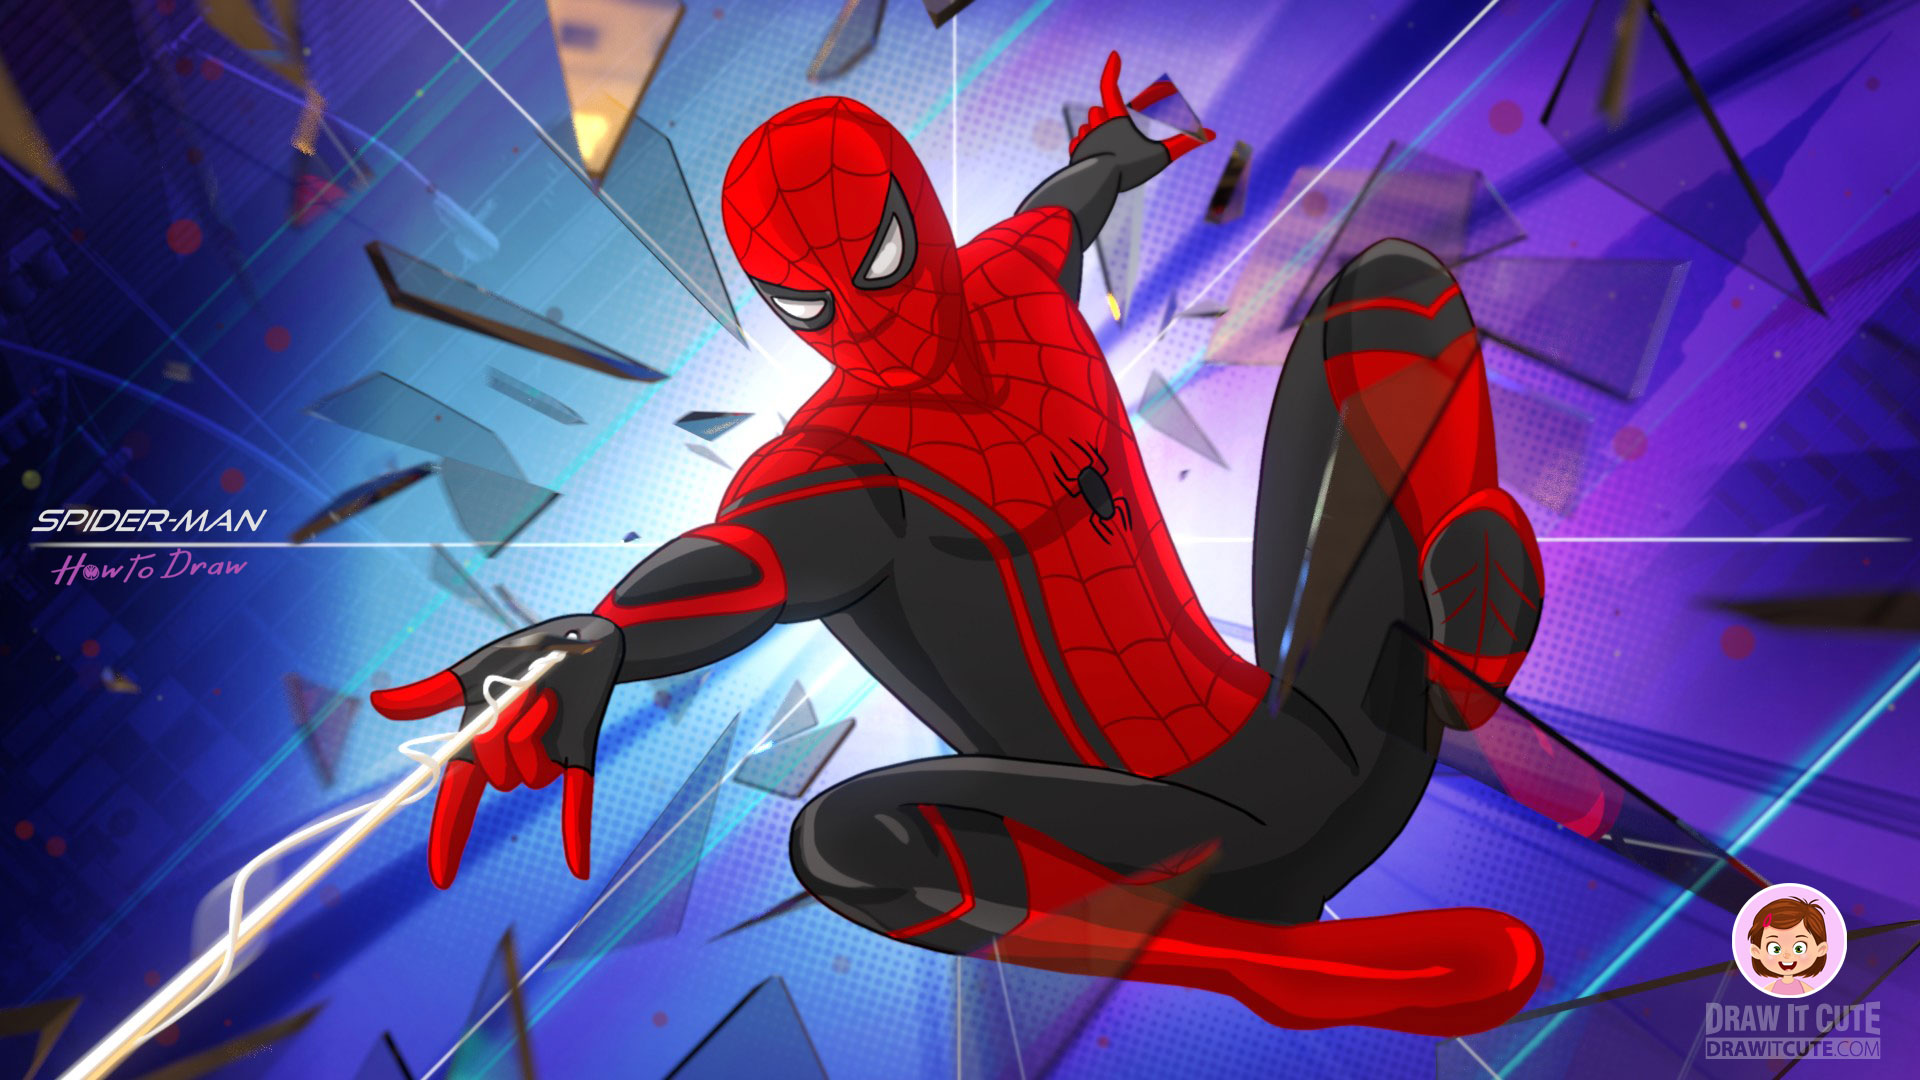 fond d'écran en direct spiderman,homme araignée,personnage fictif,dessin animé,super héros,conception graphique